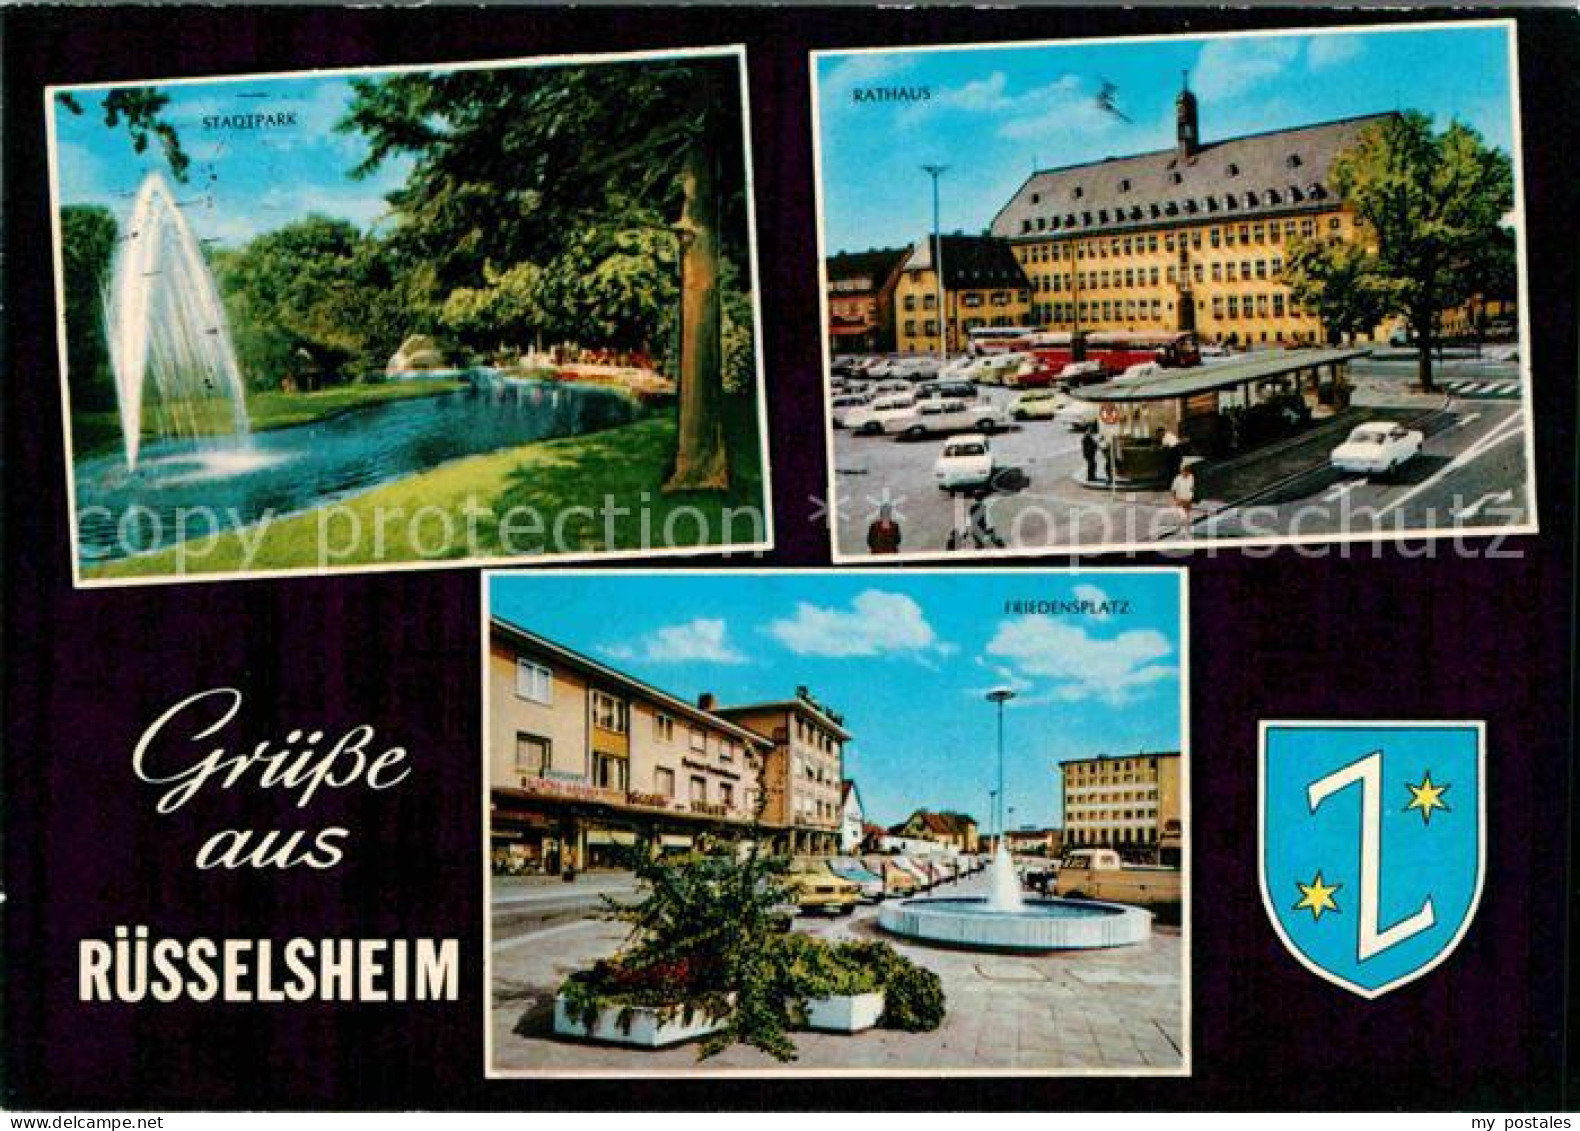 72761758 Ruesselsheim Main Stadtpark Rathaus Friedensplatz Ruesselsheim - Ruesselsheim